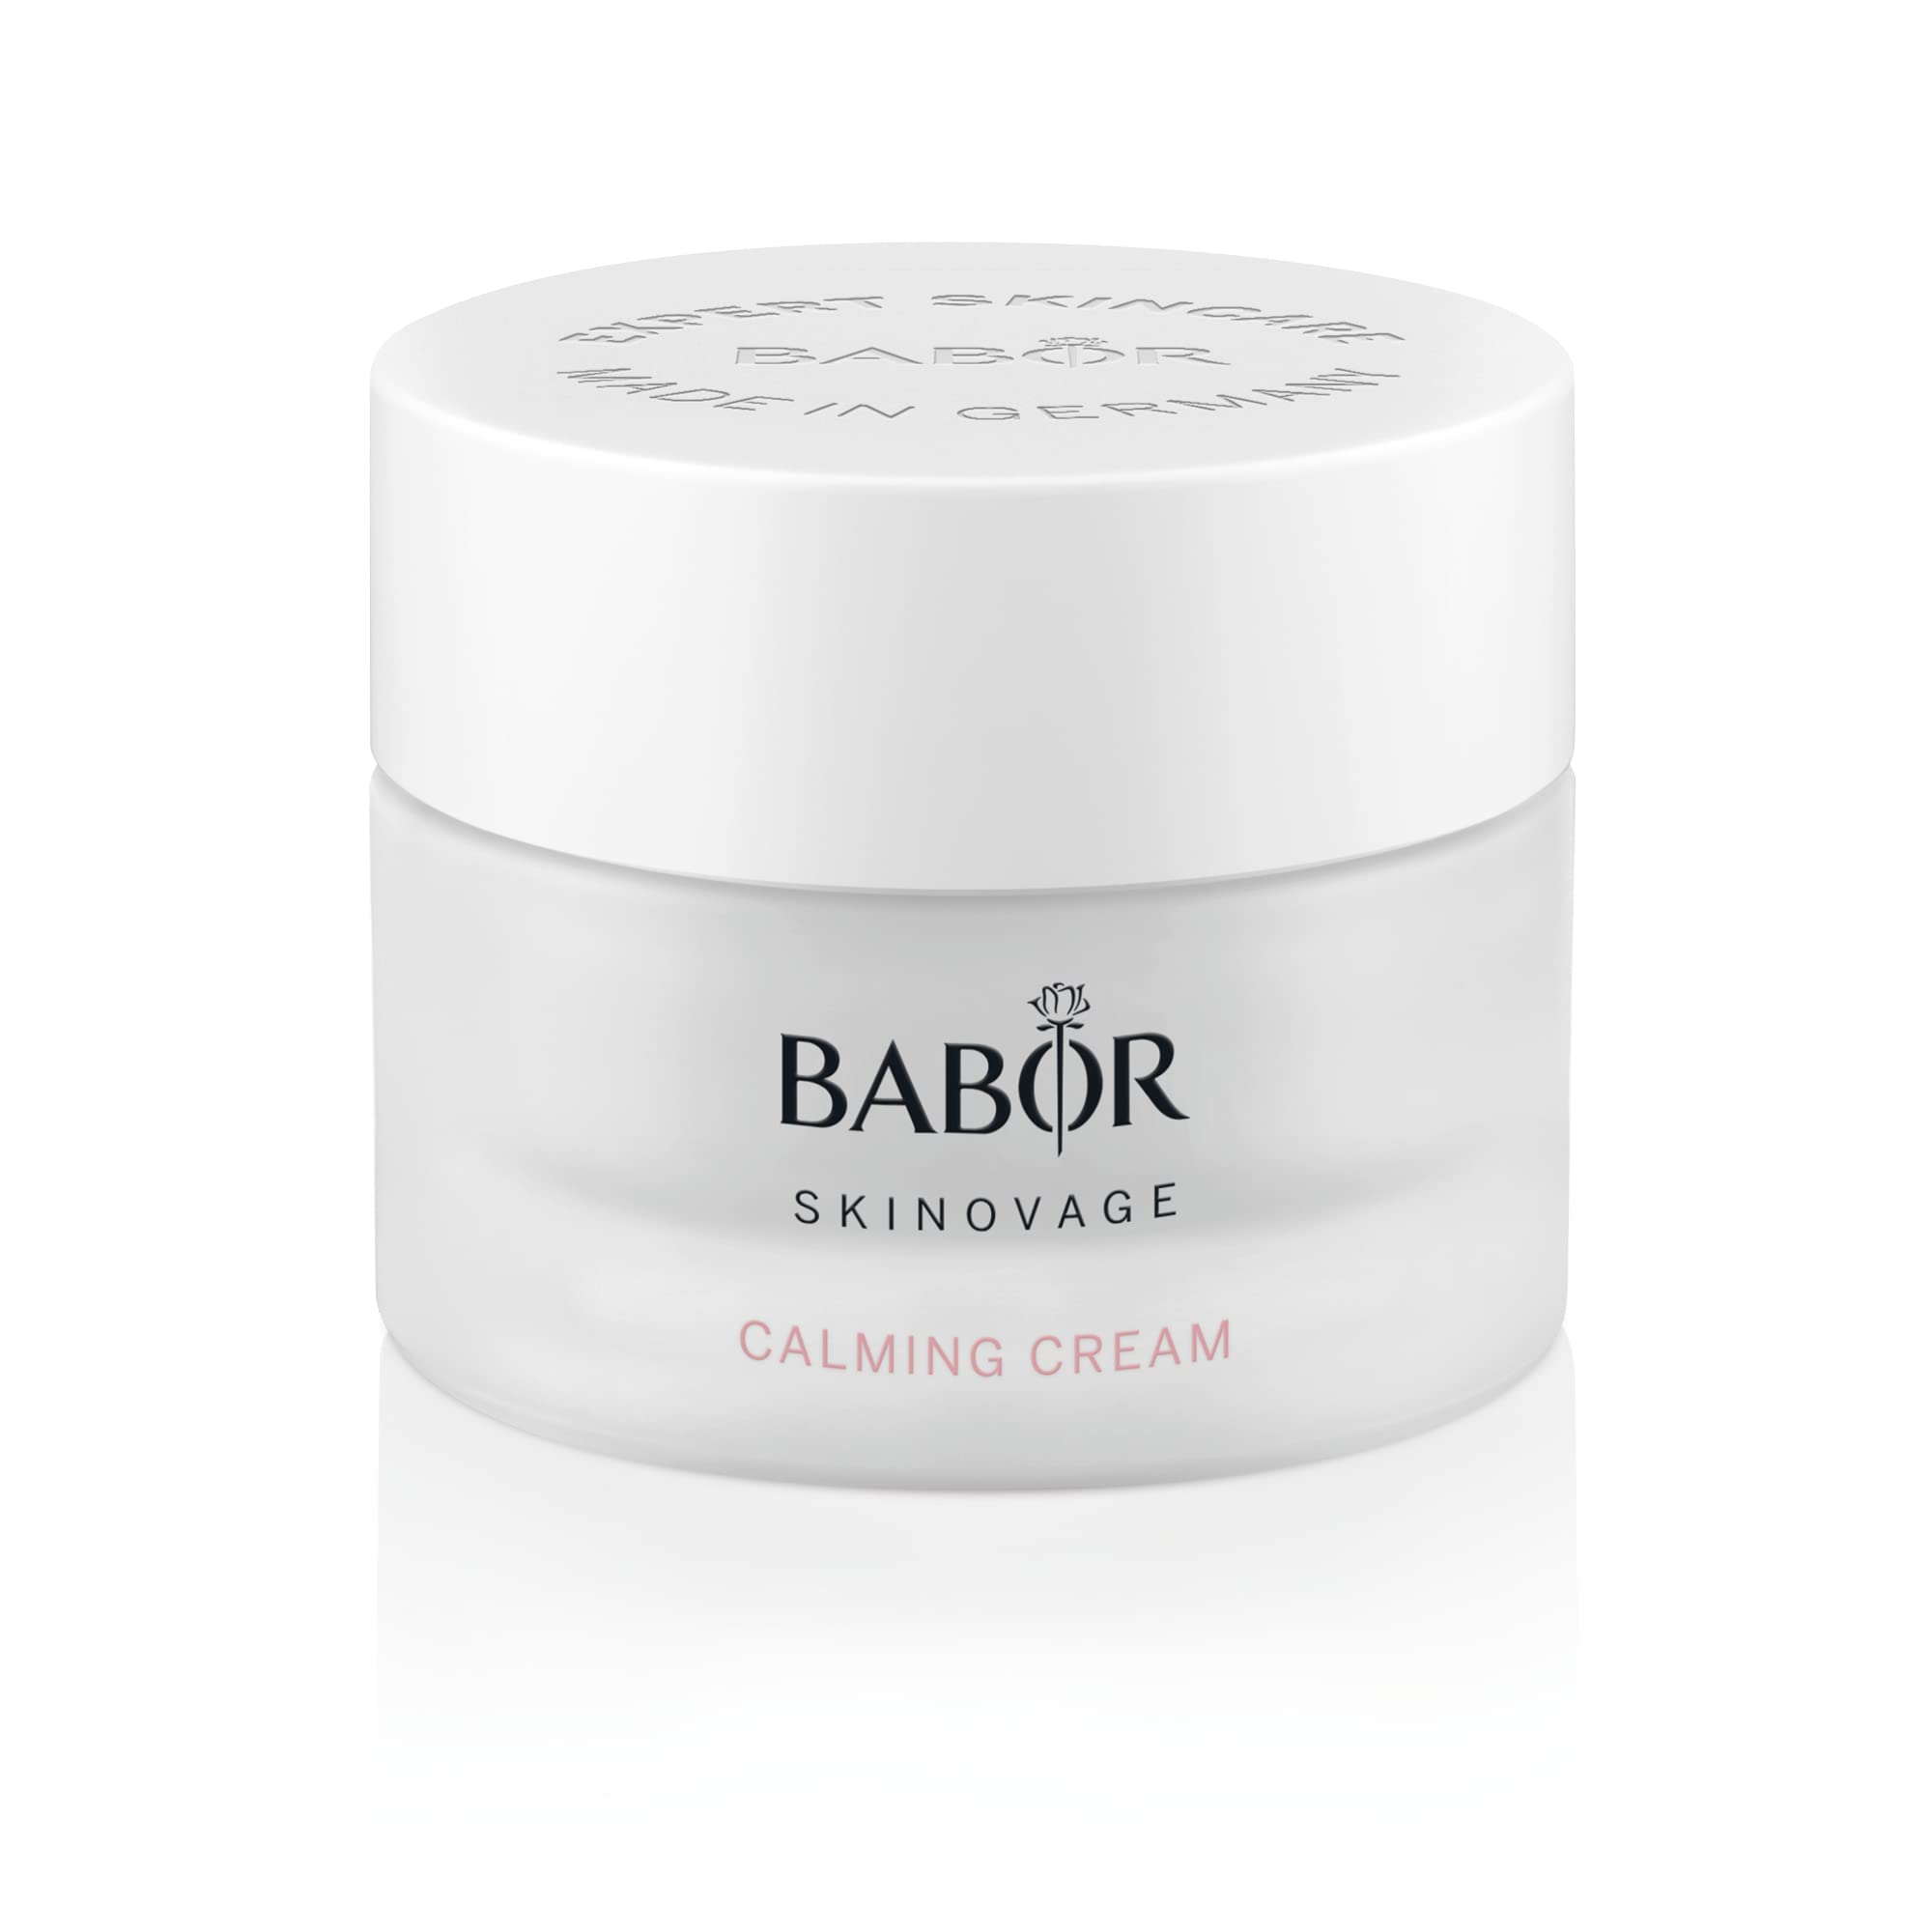 BABOR SKINOVAGE Calming Cream, Gesichtscreme für empfindliche Haut, Feuchtigkeitspflege ohne Farb- oder Duftstoffe, Vegane Formel, 50 ml